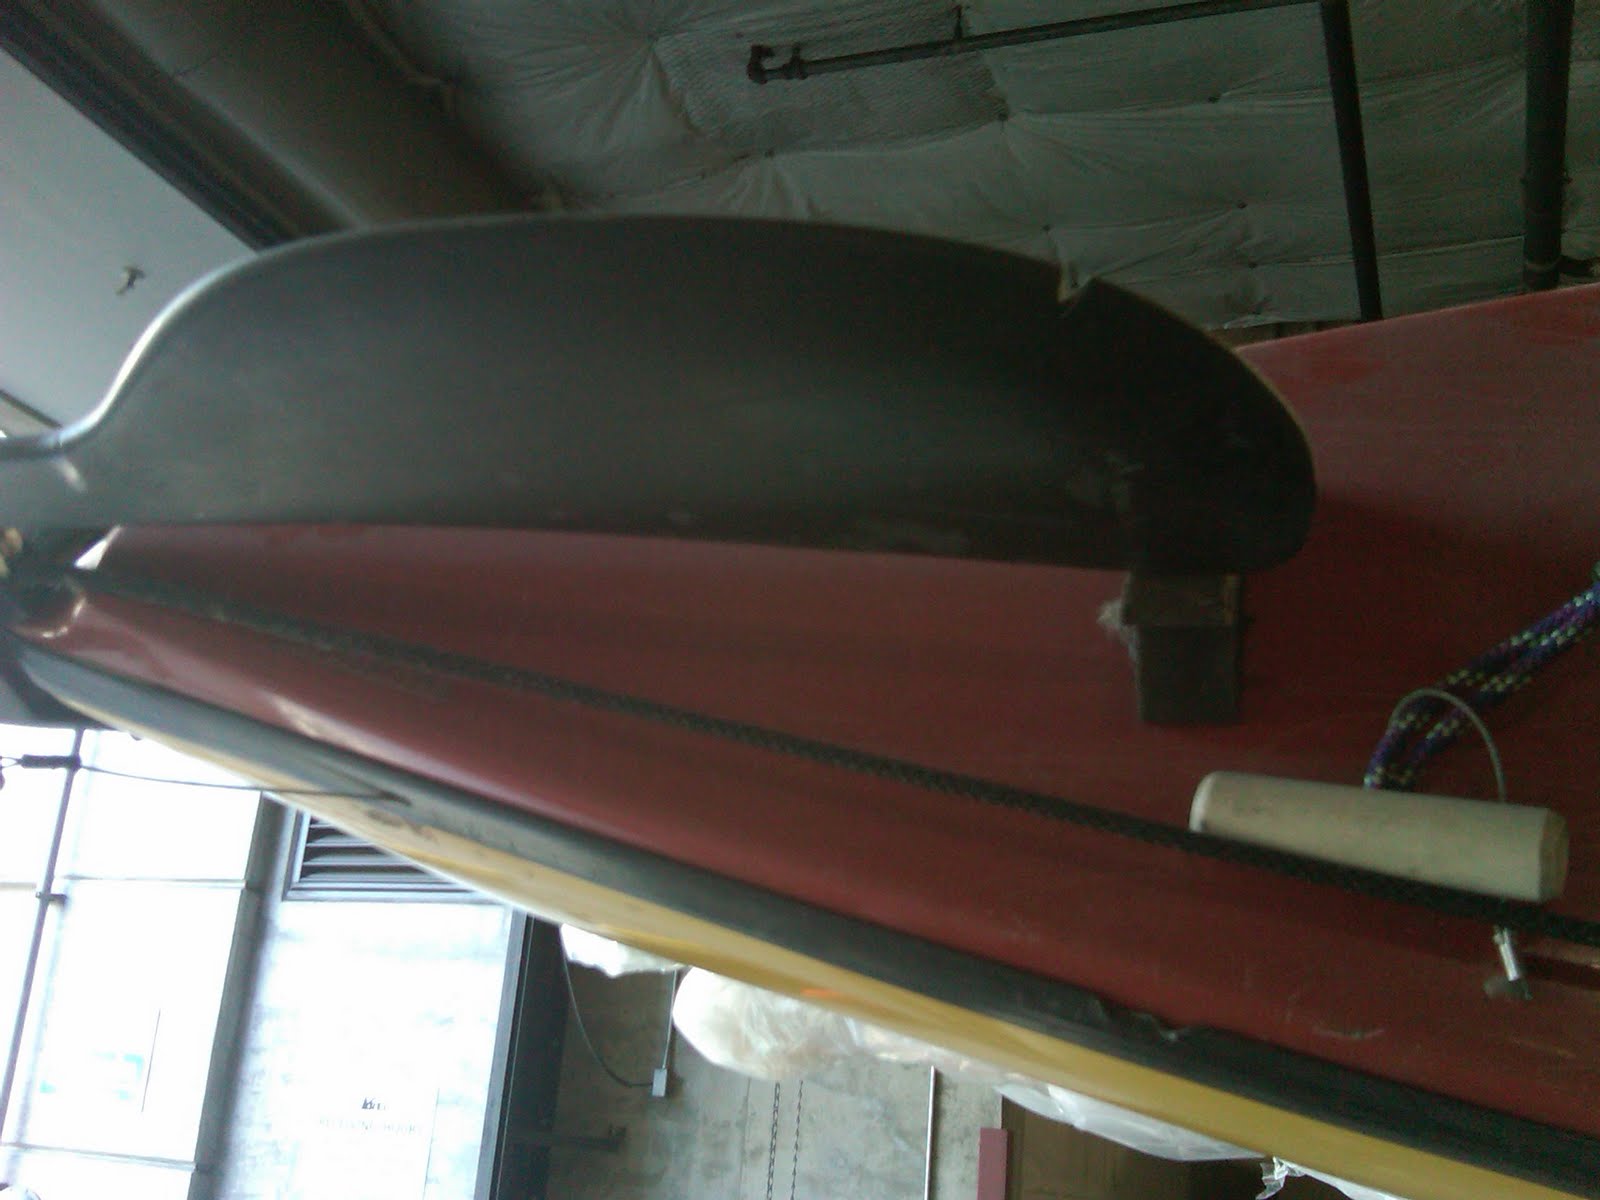  Eddyline whisper for sale] &gt;&gt; [eddyline kayak for sale lake norman nc